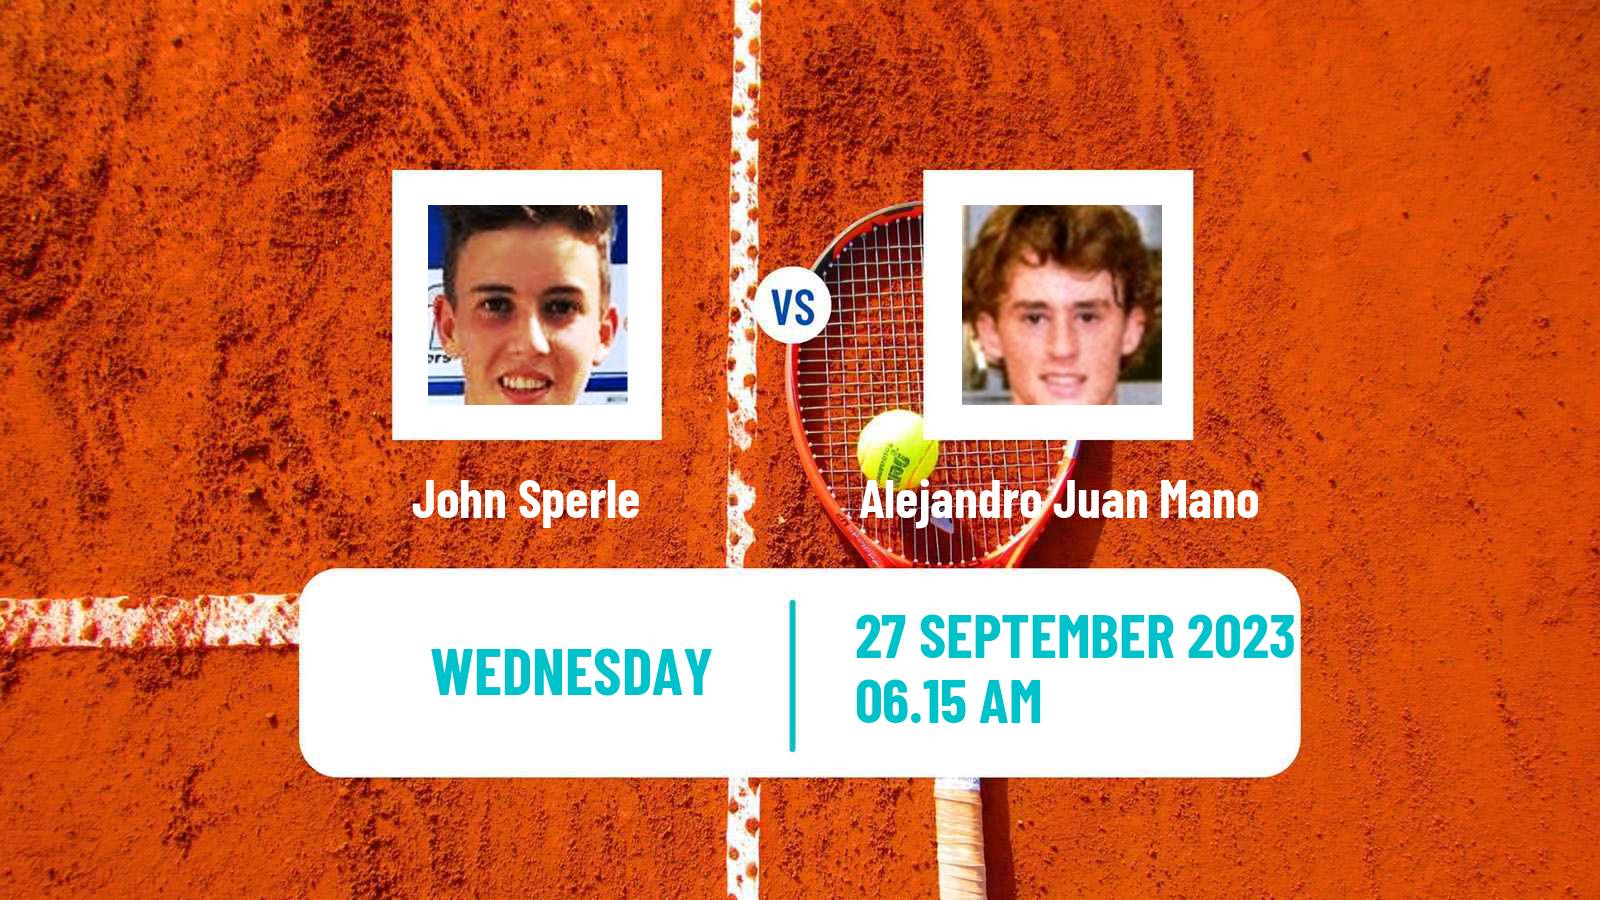 Tennis ITF M25 Sabadell 2 Men John Sperle - Alejandro Juan Mano